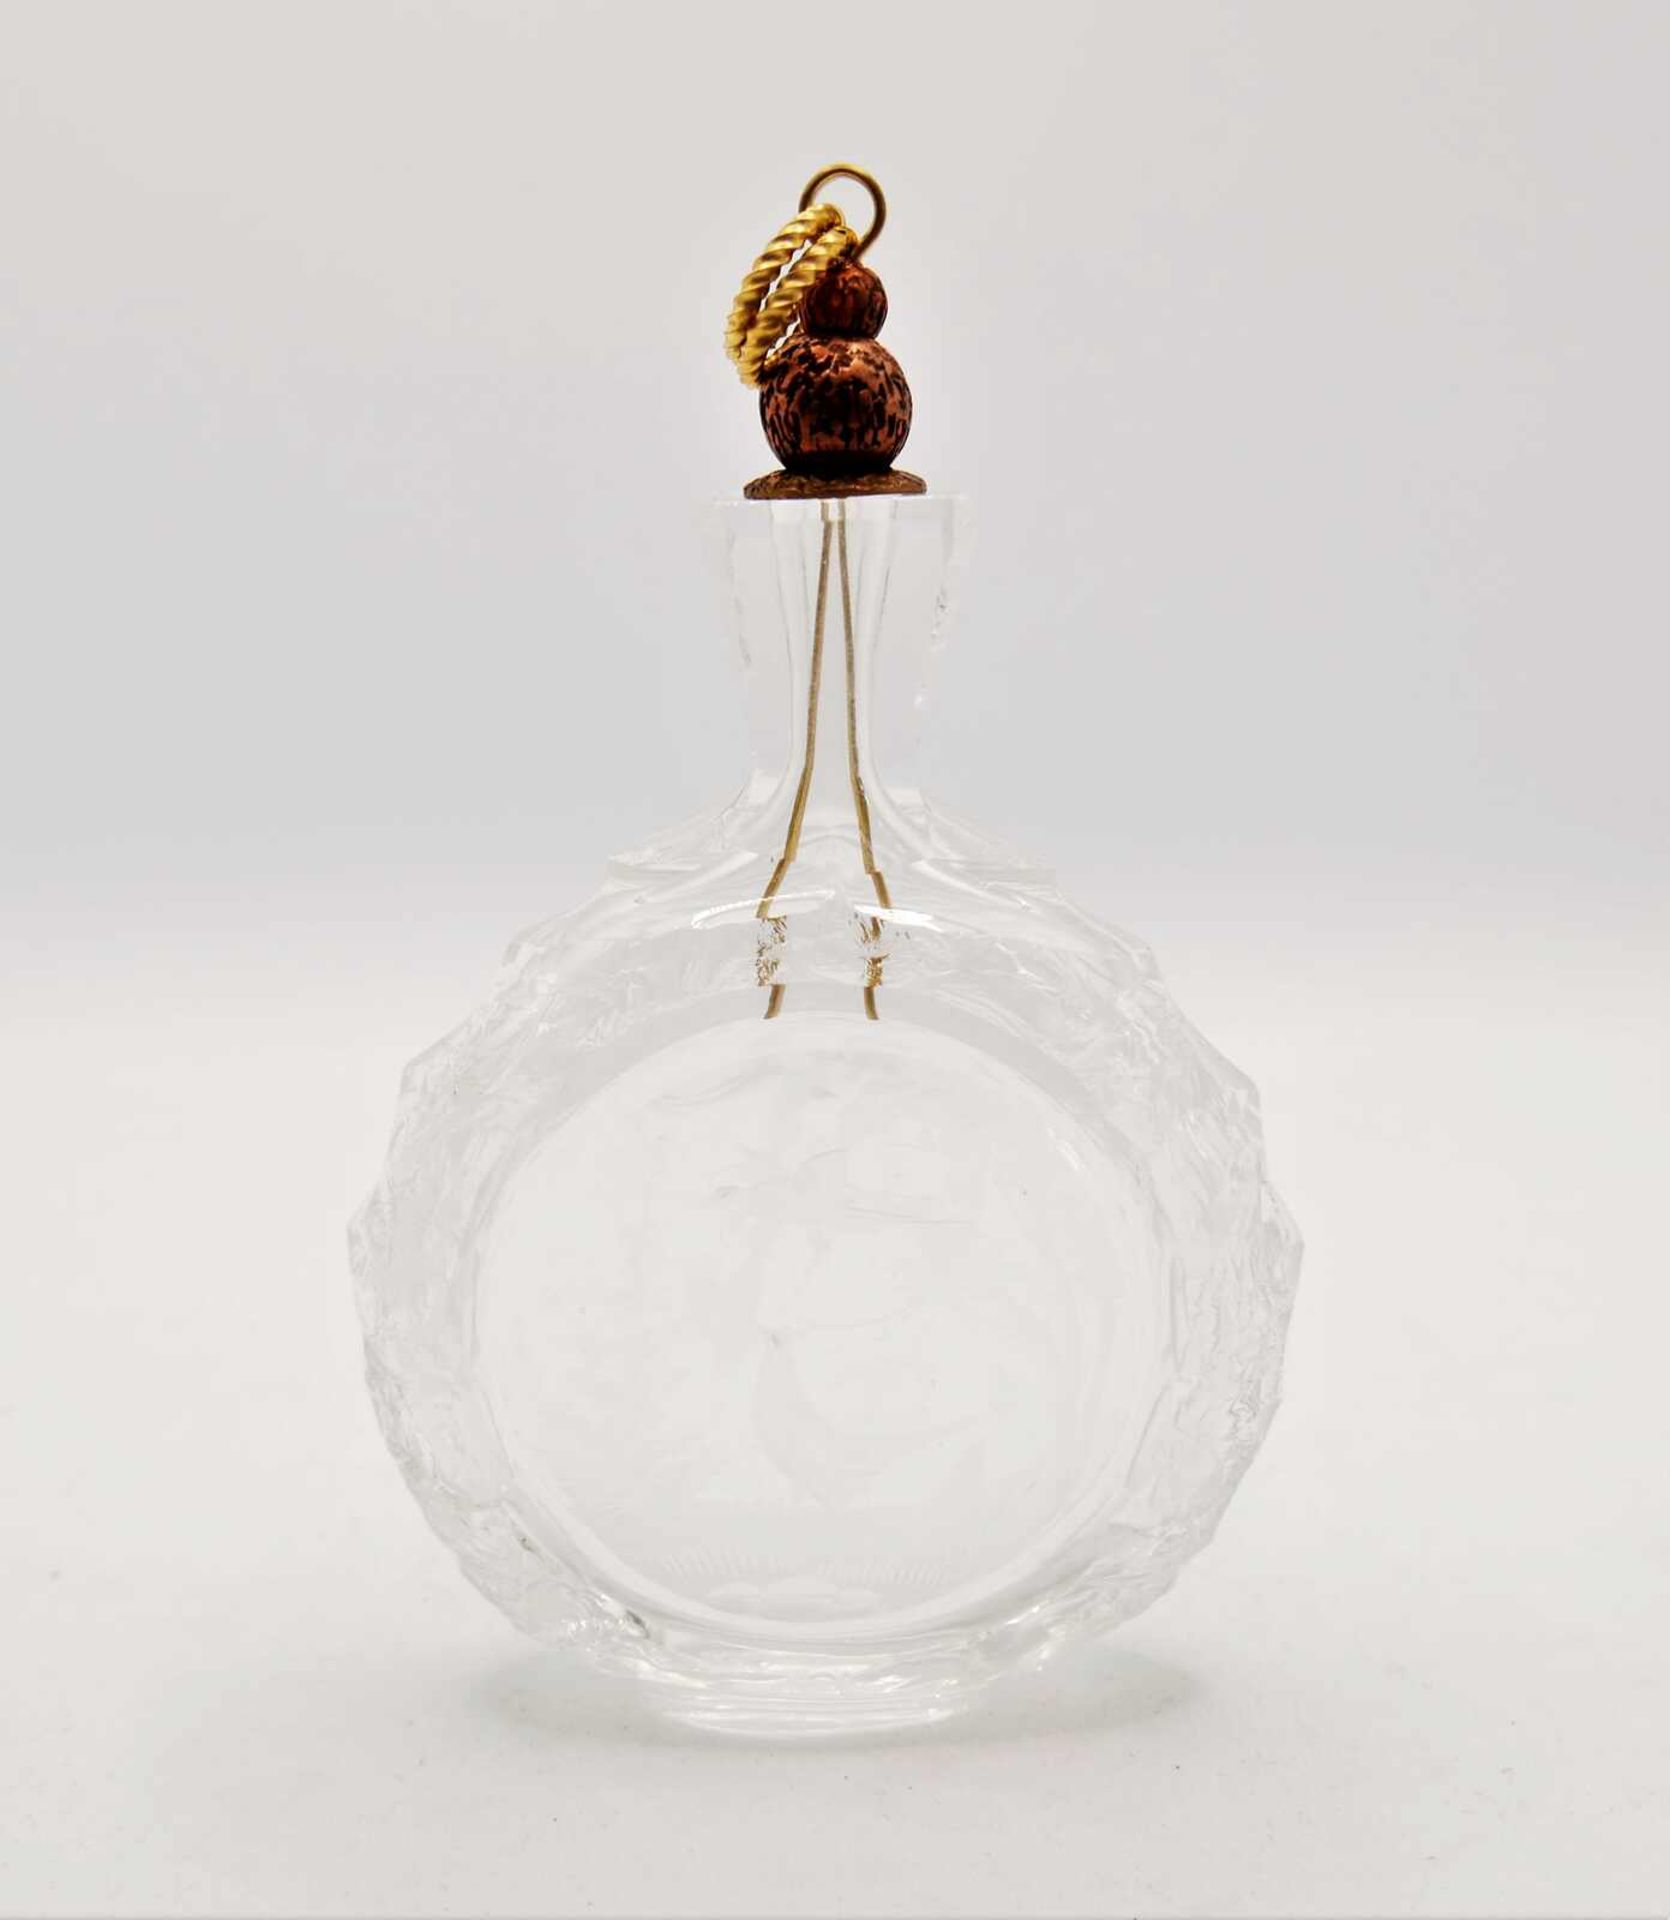 Schnupftabakflasche Glas aus Sammlung, Bixl, mit eingravierten jagdlichen Motiven, mit Stöpsel. Ba - Image 2 of 2